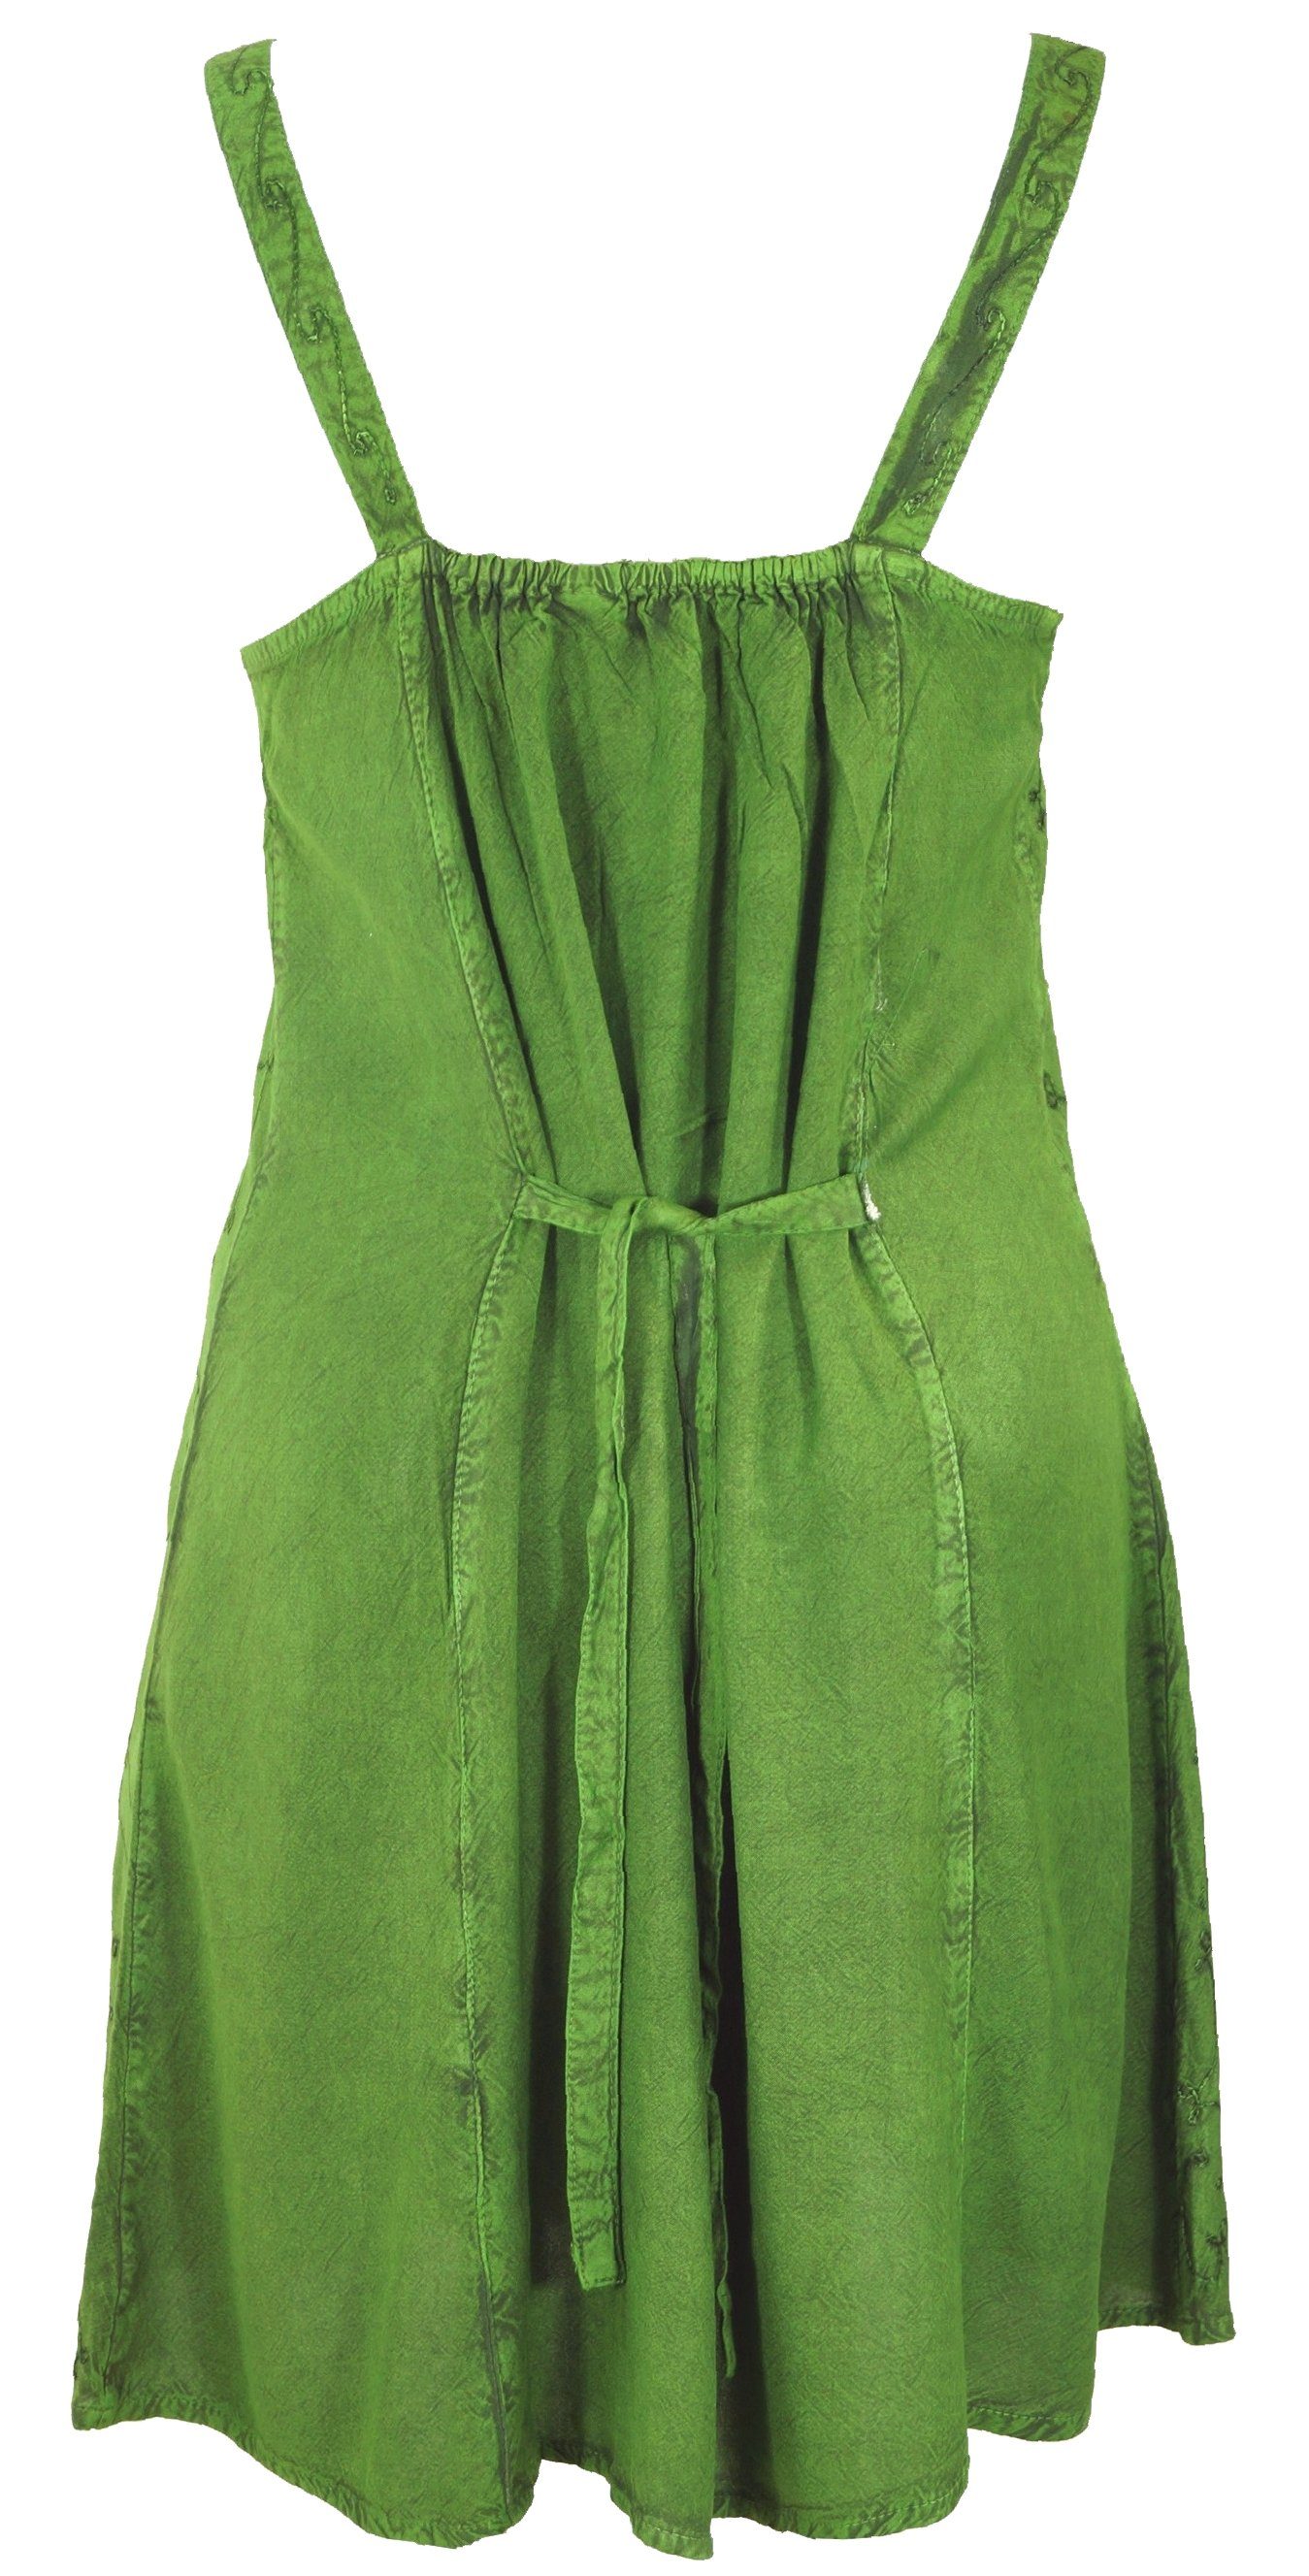 Boho Minikleid alternative indisches Guru-Shop Besticktes -.. grün Midikleid Kleid, 7 Design Bekleidung